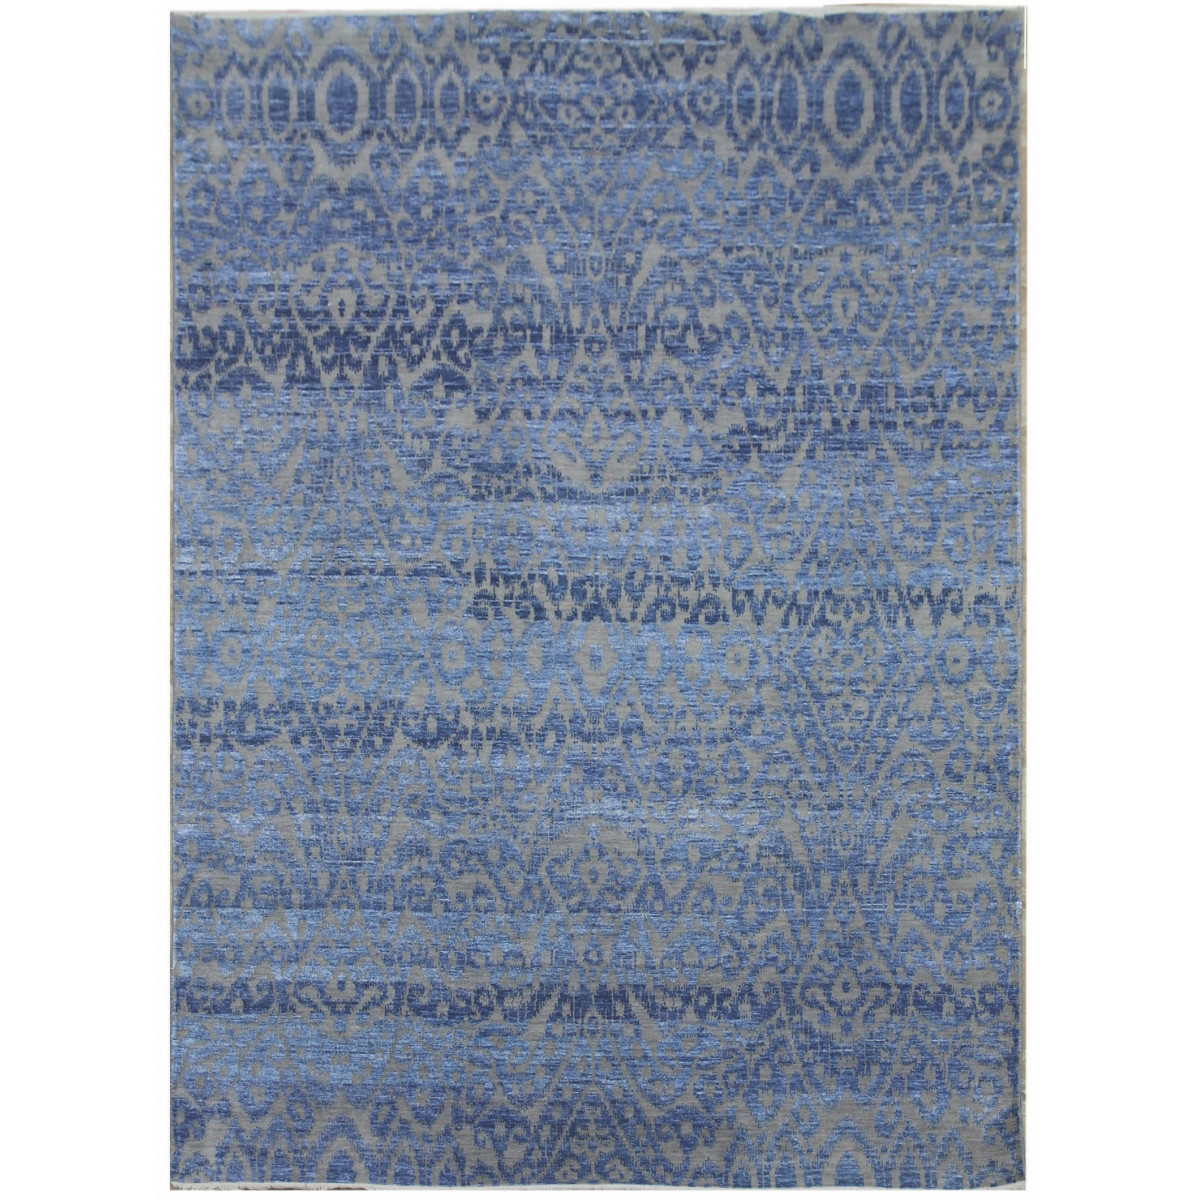 Ručně vázaný kusový koberec Diamond DC-EKT 6 Silver/light blue